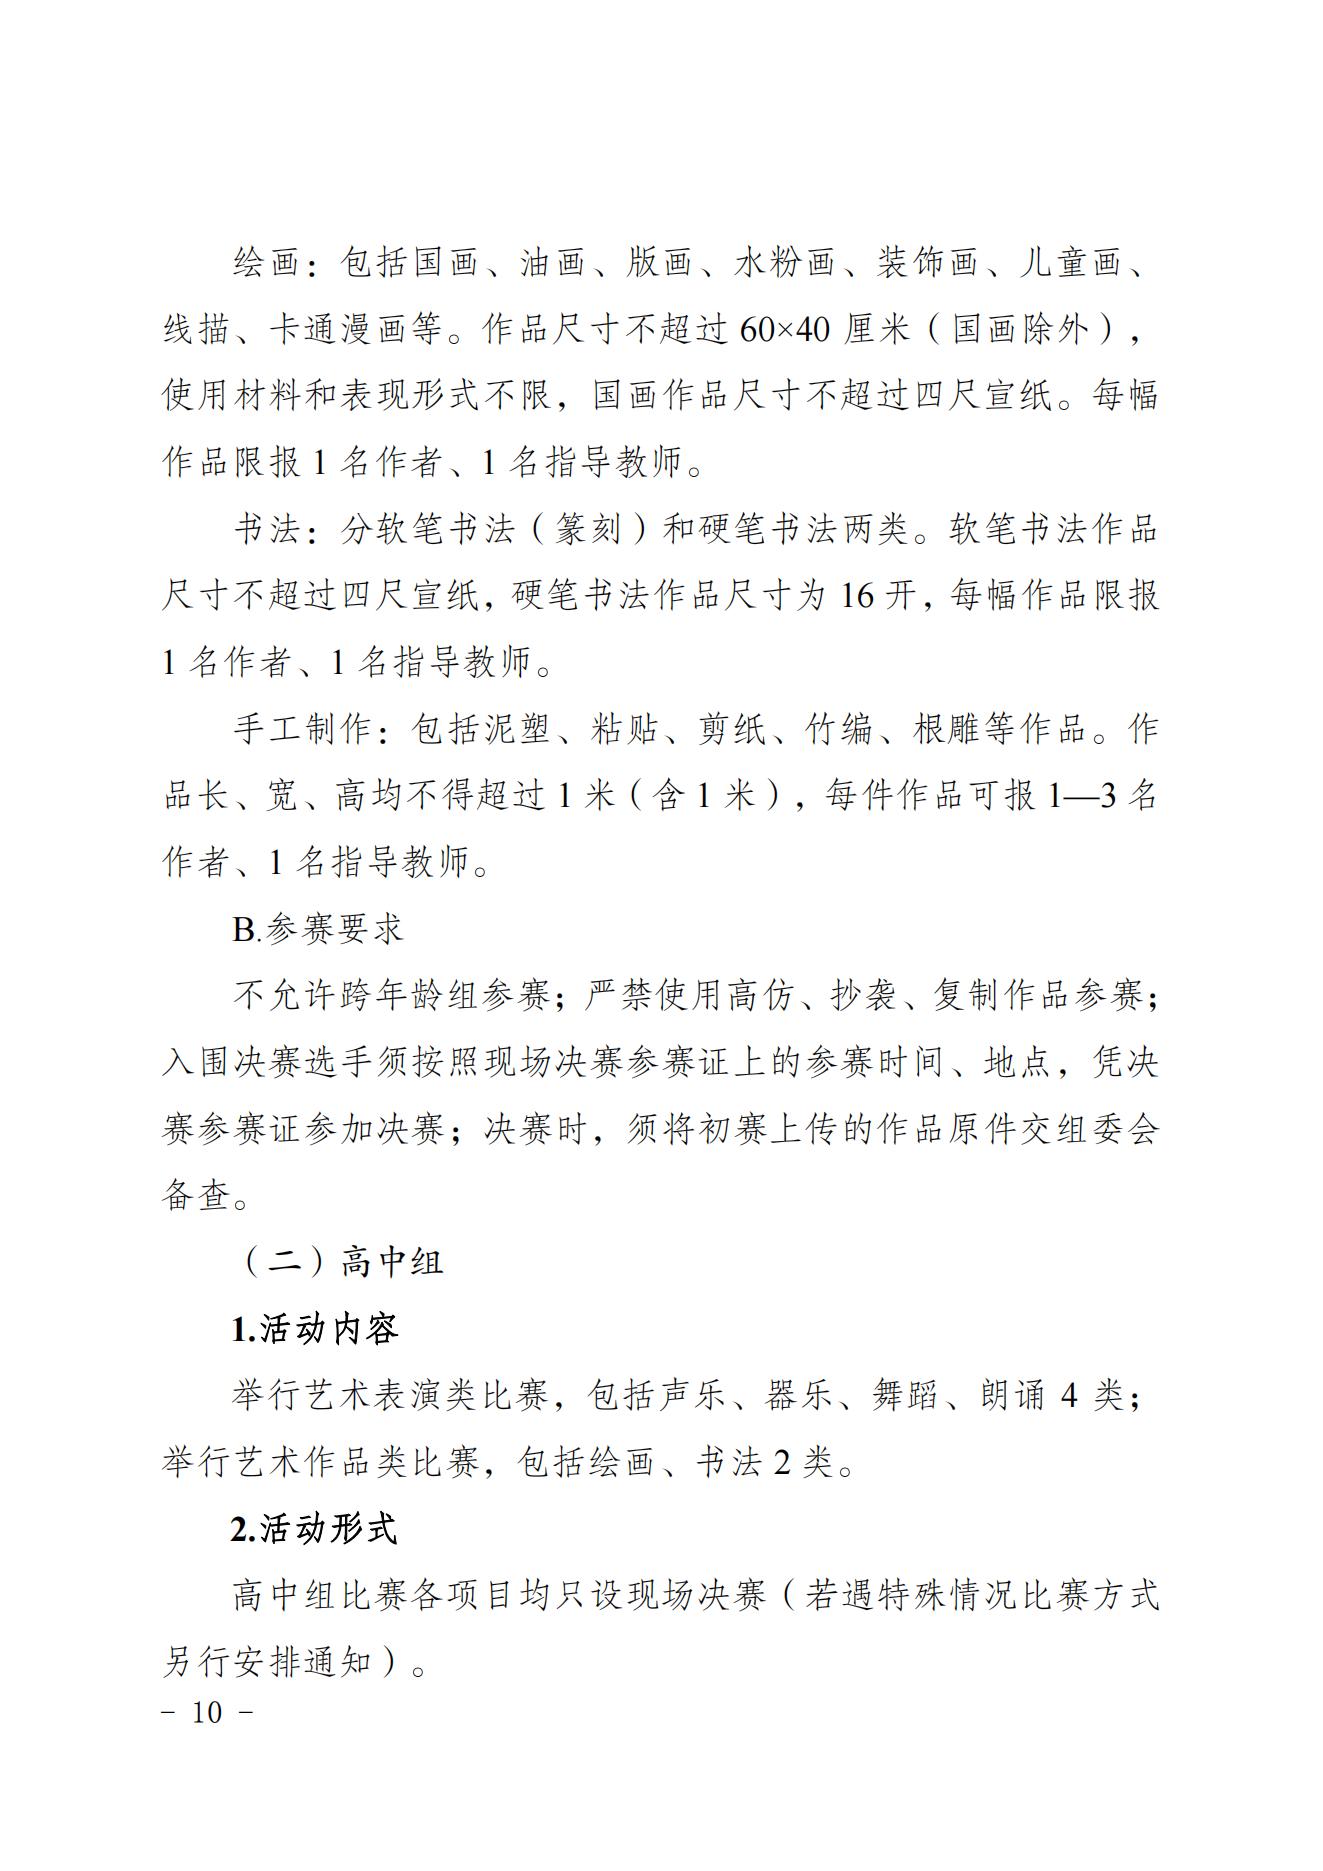 2022共青团重庆市委关于印发重庆市第十七届中小学生才艺大赛活动方案的通知 第10张